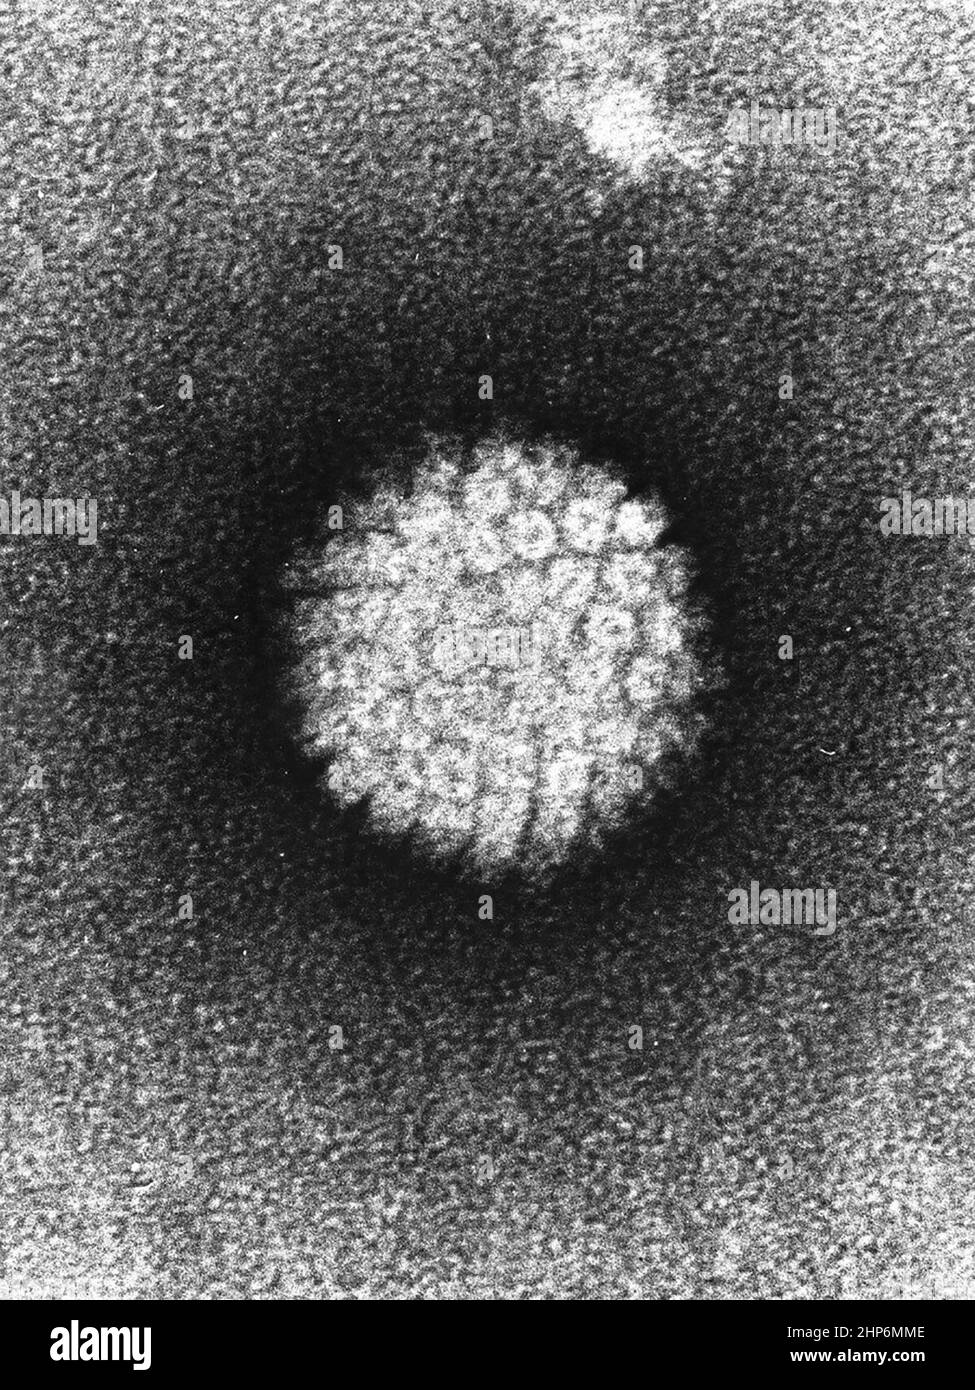 Elektronenmikrographie eines negativ gefärbten humanen Papillomvirus (HBV), das in humanen Warzen vorkommt. Warzen an Händen und Füßen sind nie bekannt, dass sie zu Krebs gelangen. Nach vielen Jahren können jedoch Halswirbelwarzen krebsartig werden. Ca. 1986 Stockfoto